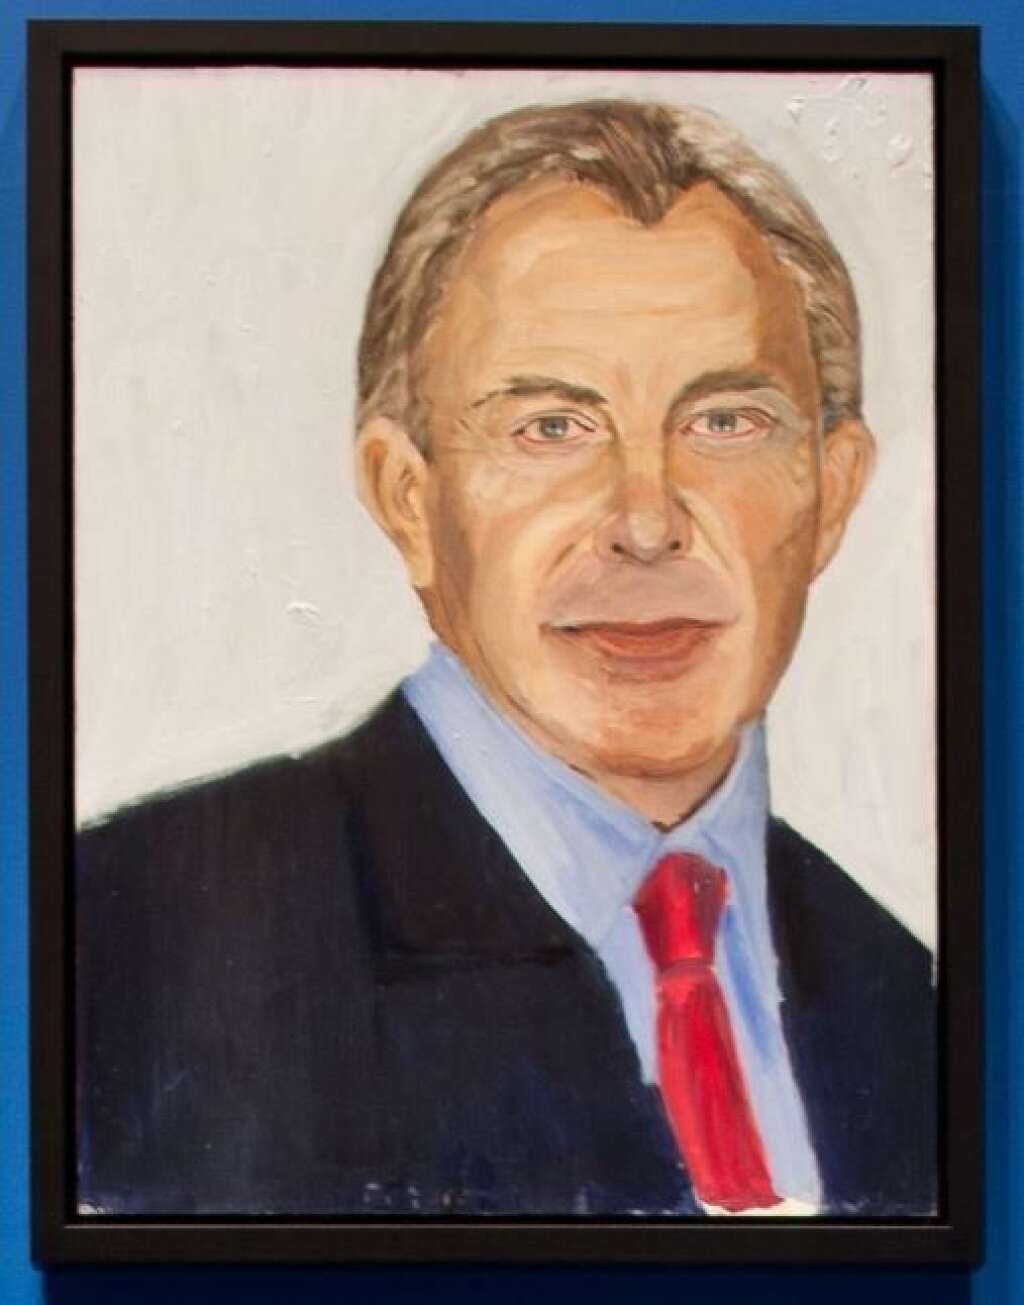 Les portraits de George W. Bush - Tony Blair, ancien Premier ministre du Royaume-Uni